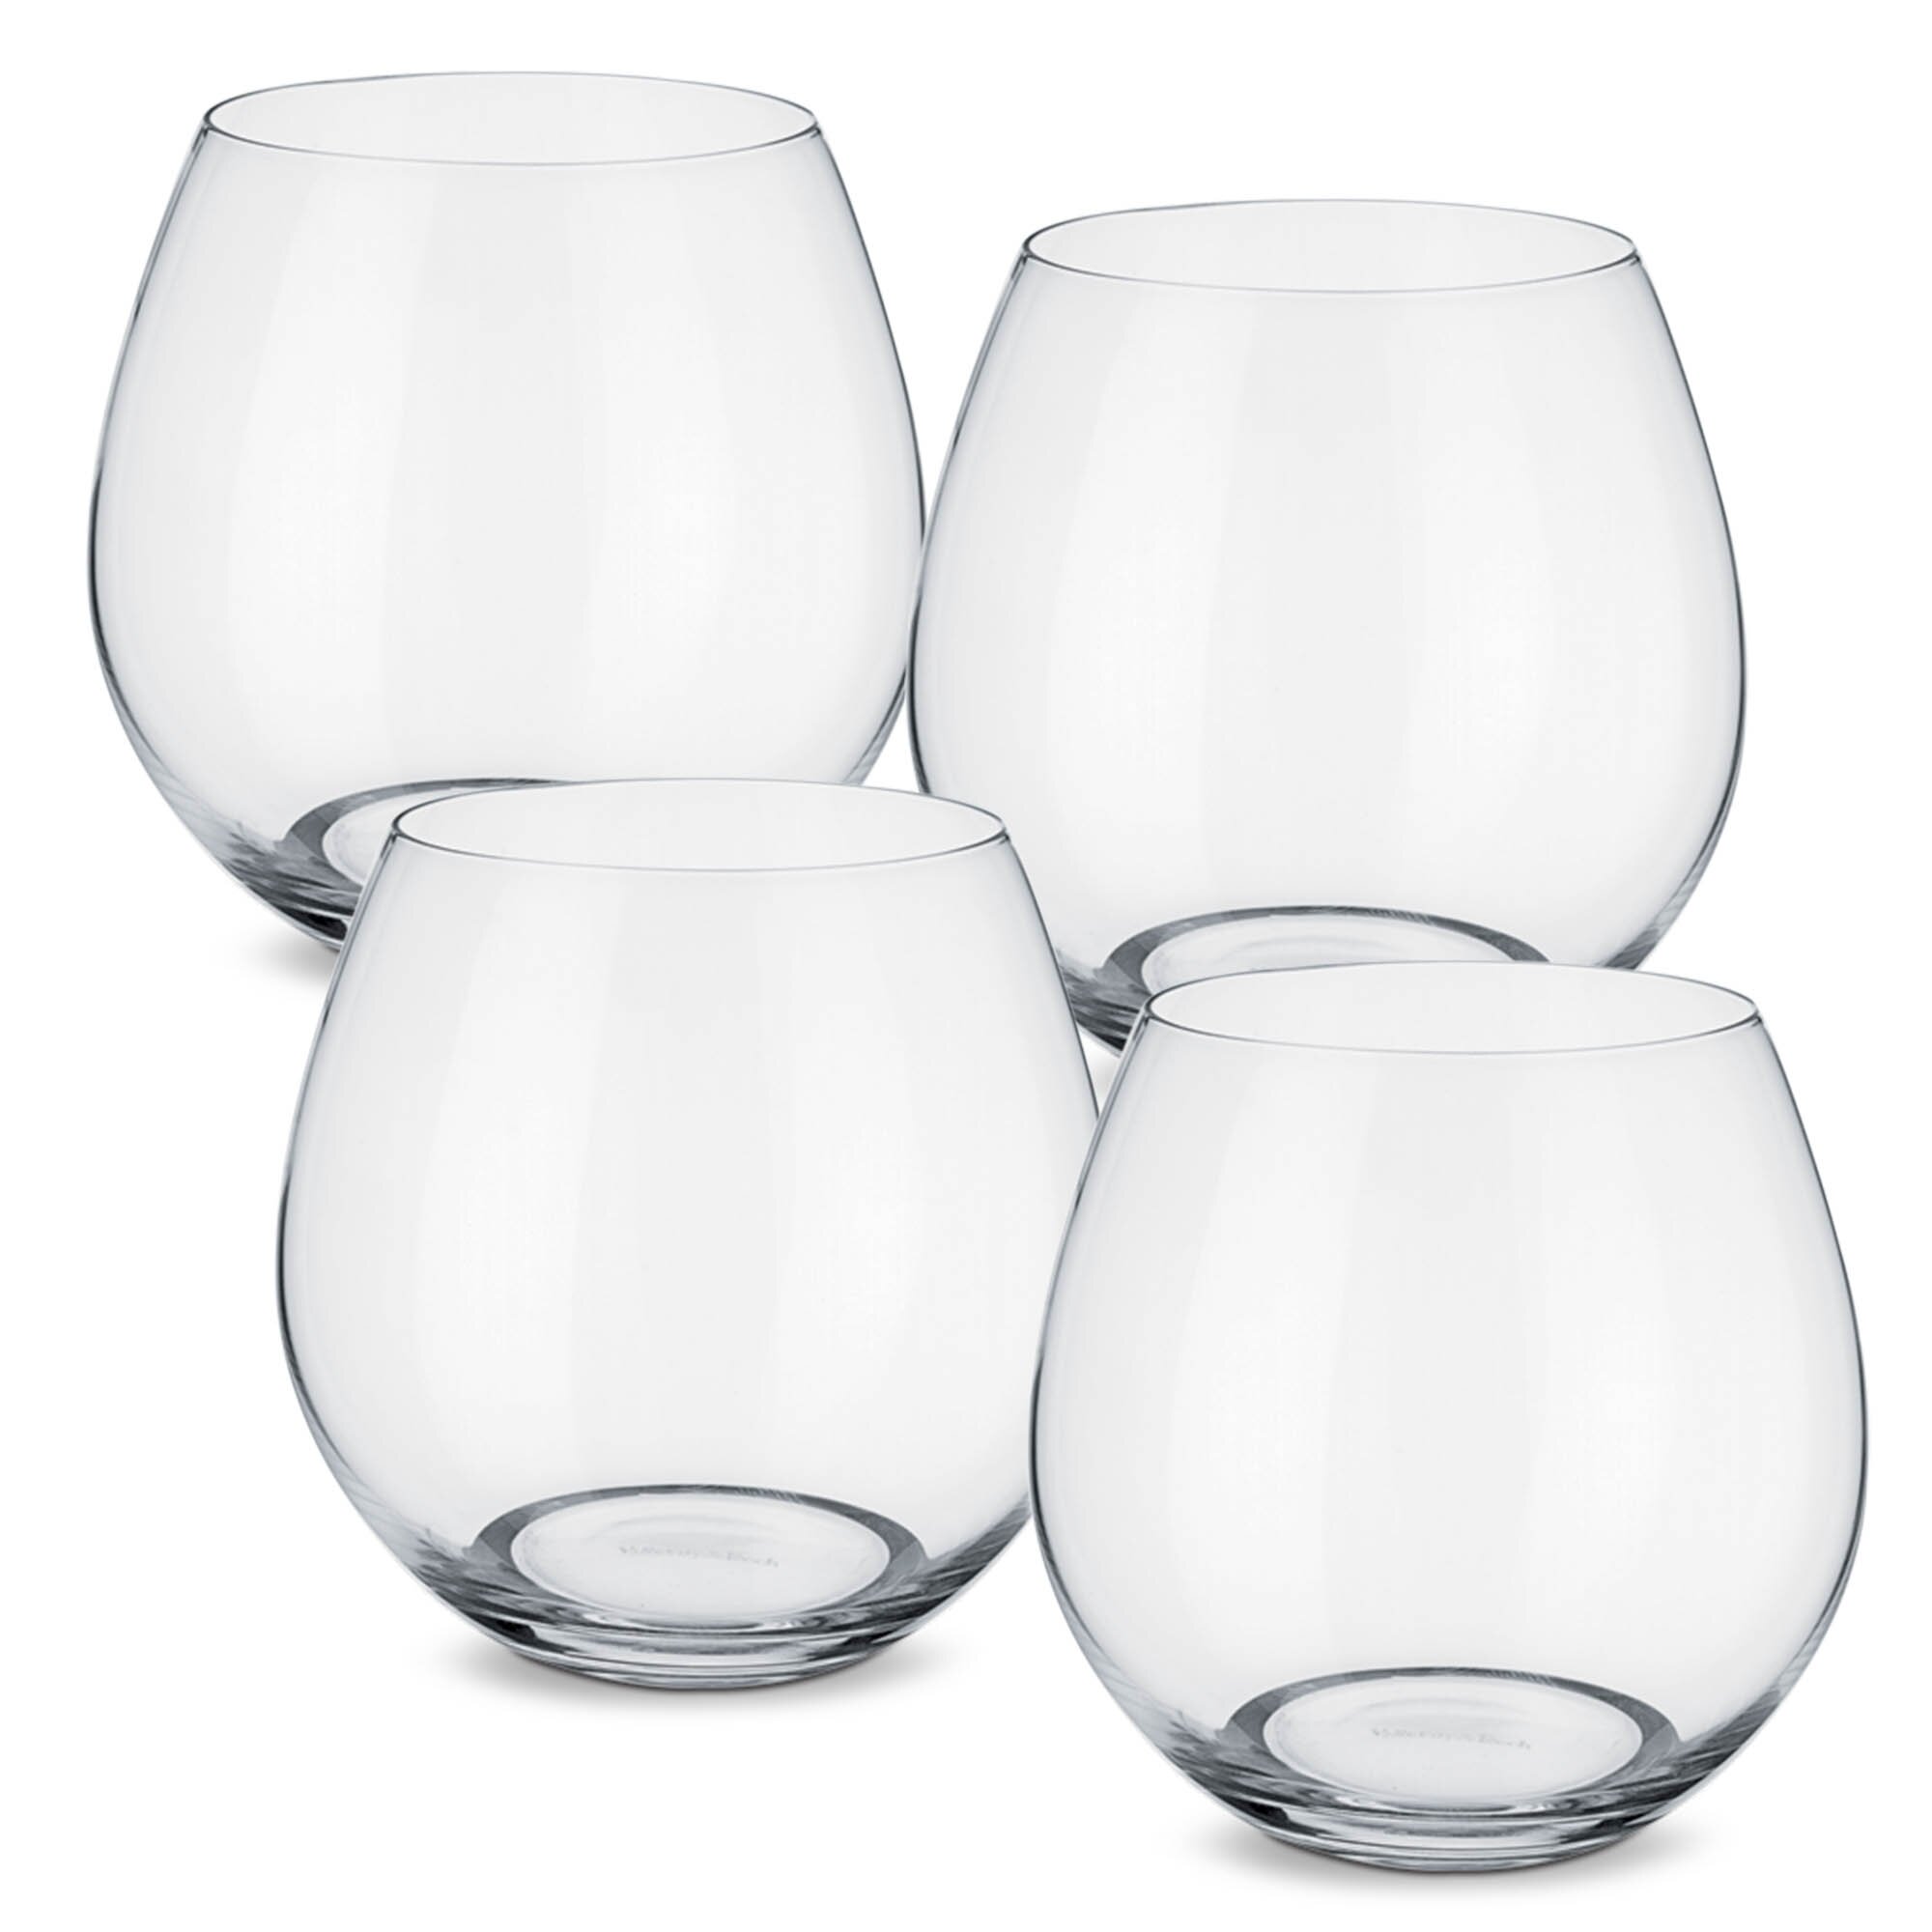 Villeroy & Boch Entrée Set/4 4 Crystal Stemless Wine Glasses & Reviews